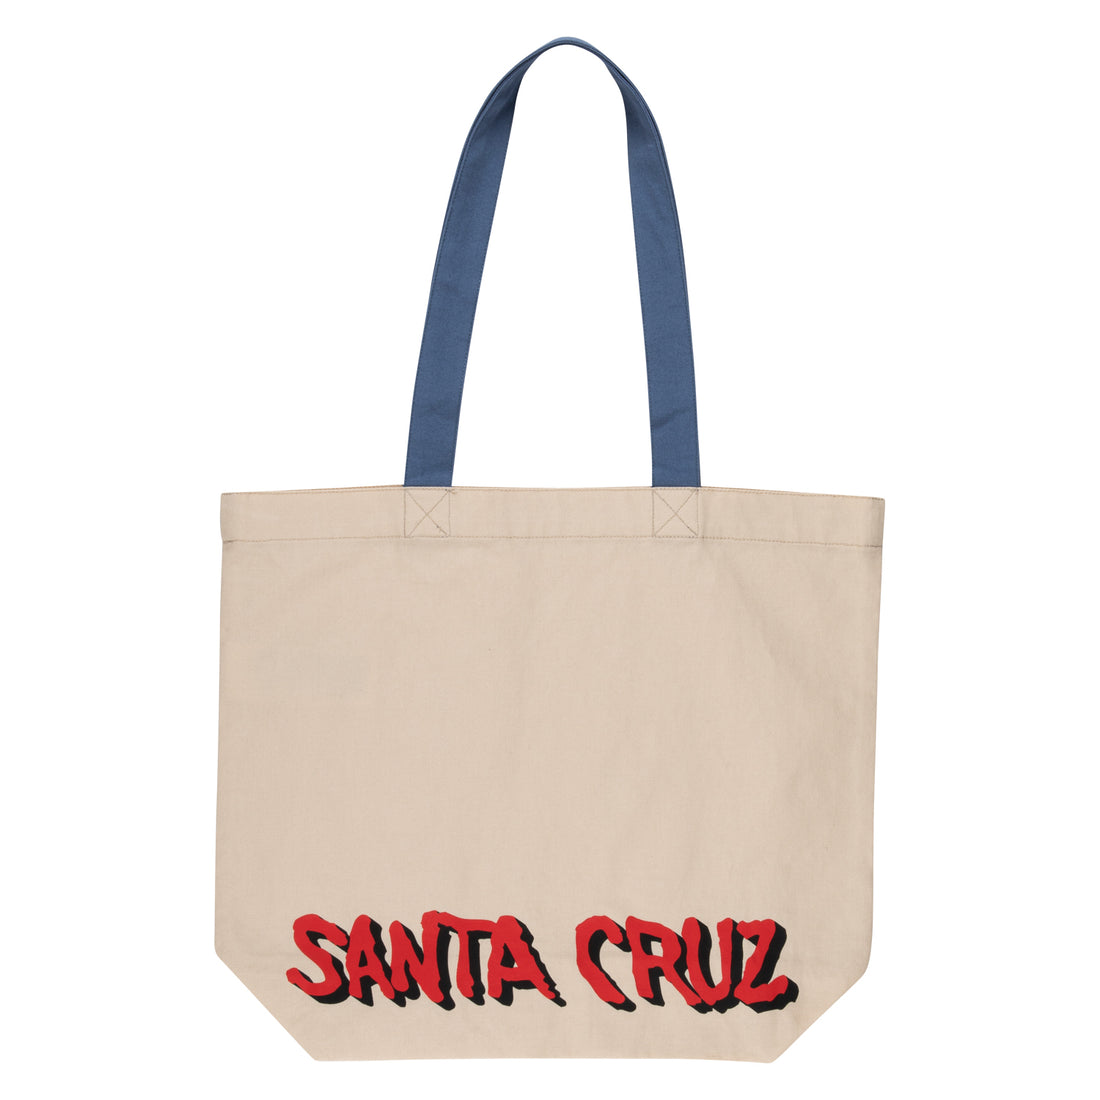 Santa Cruz Screaming Wave Tote Bag